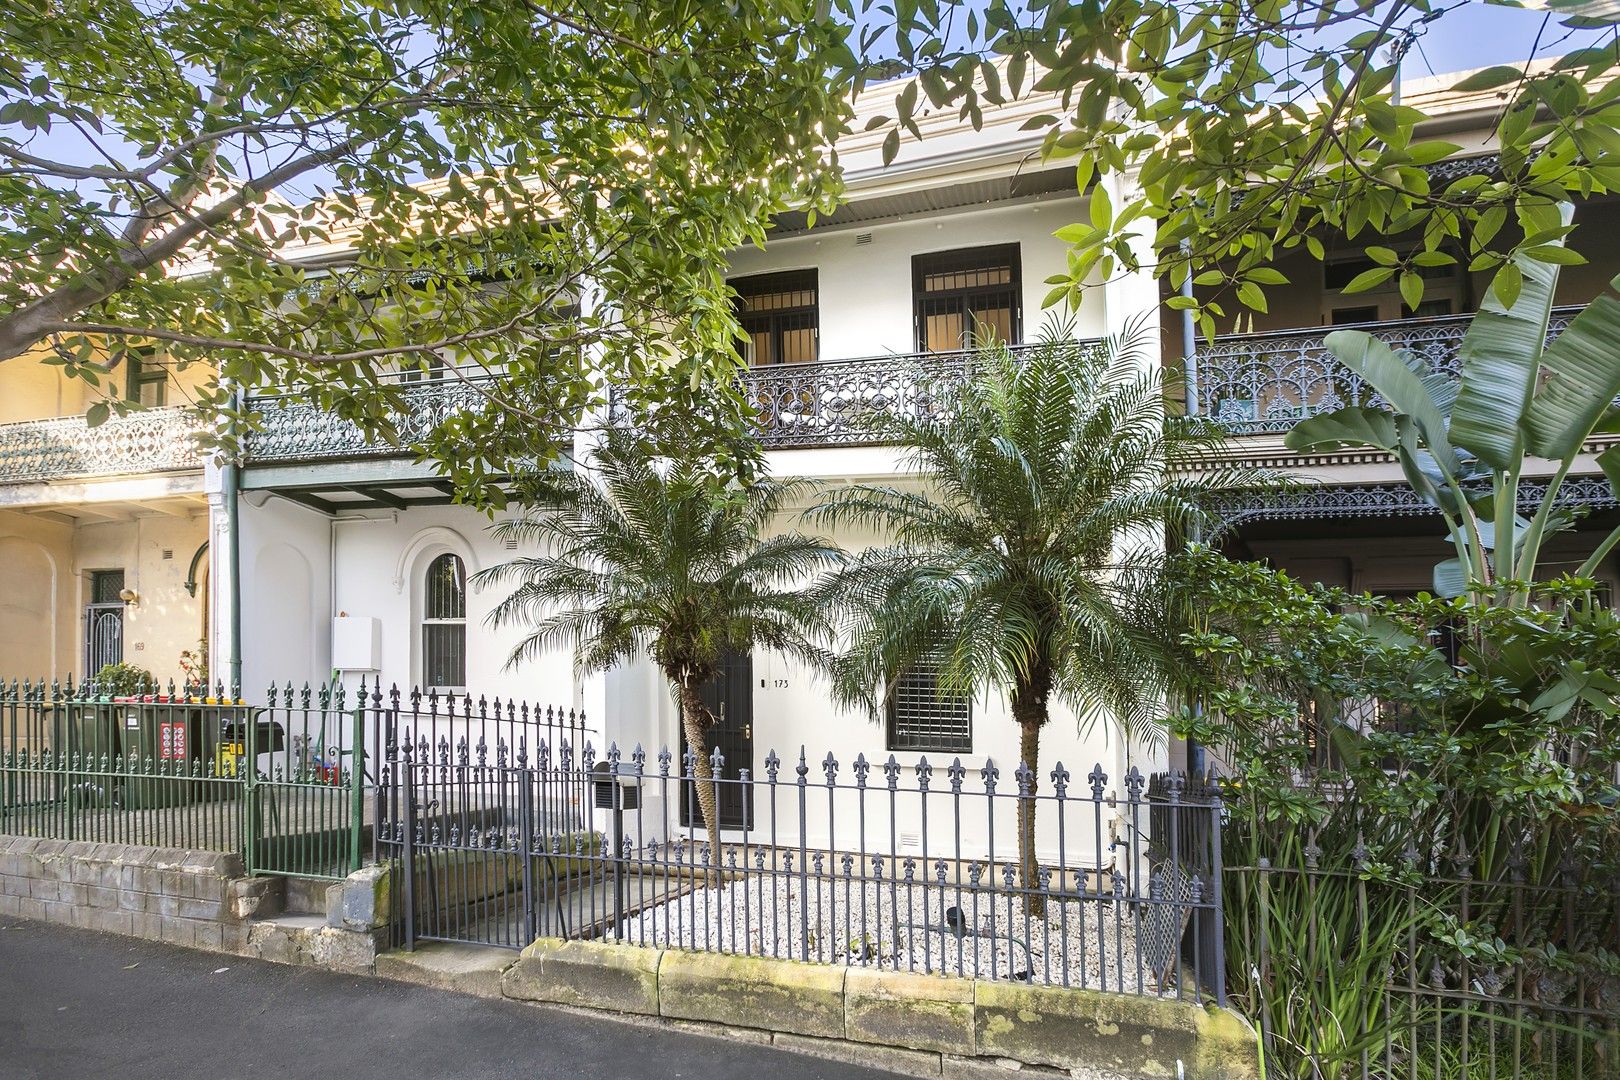 3 bedrooms House in 173 Pitt Street REDFERN NSW, 2016